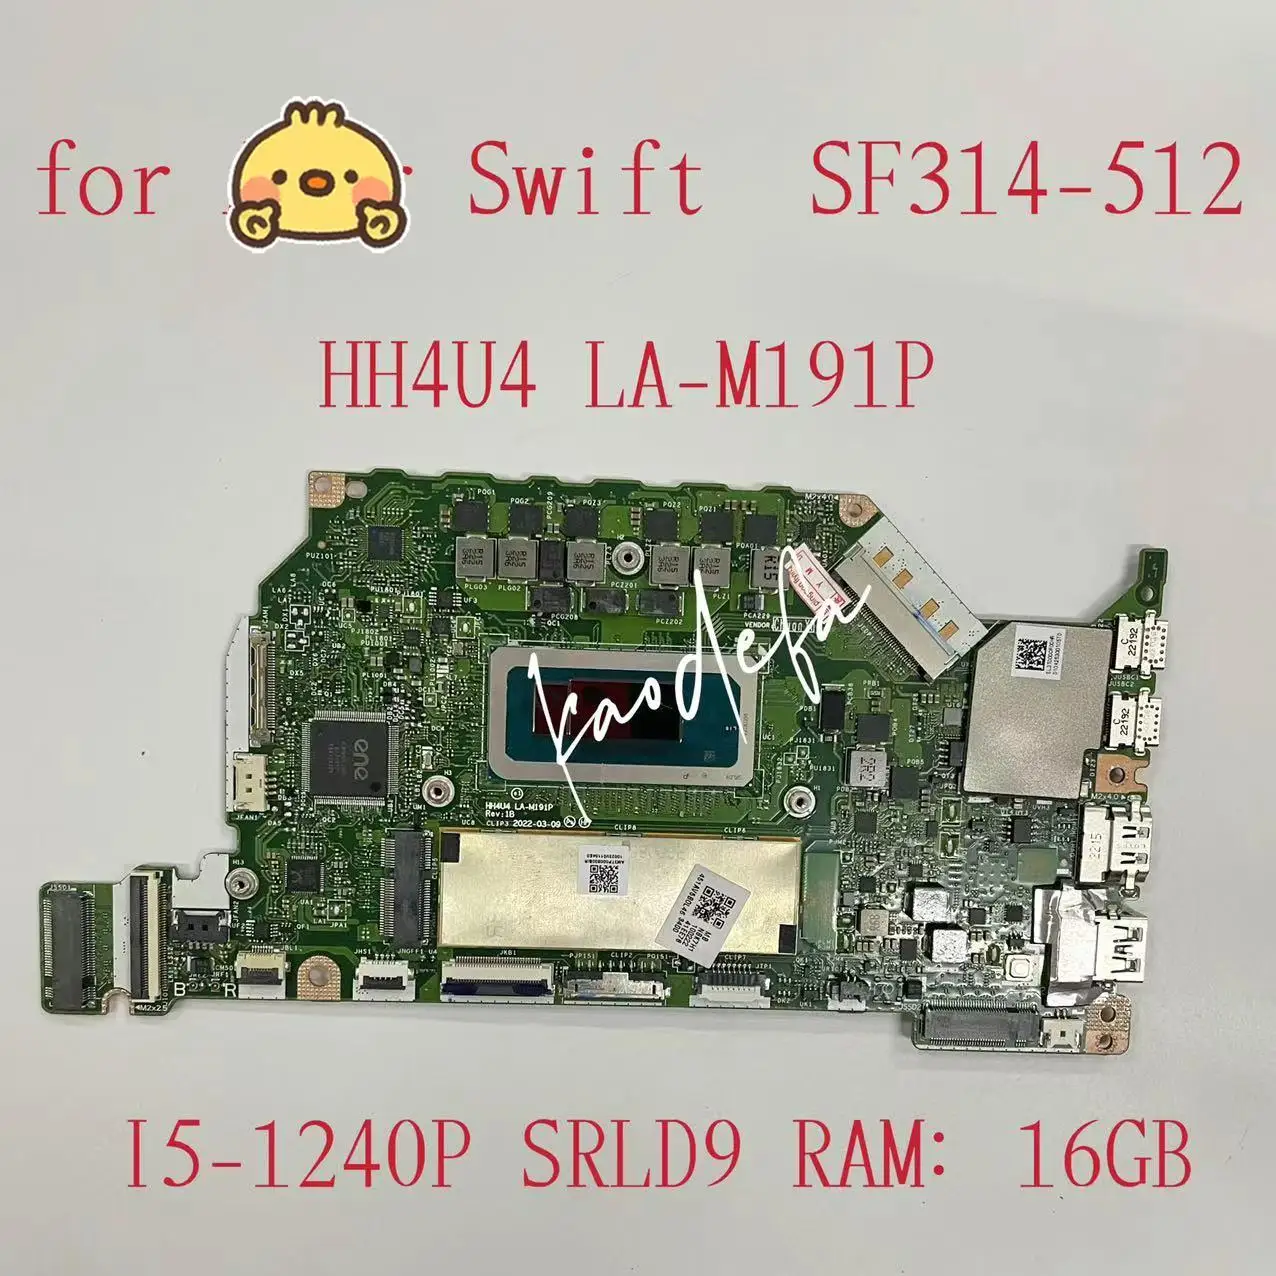 для ноутбука Acer Swift SF314-512 Материнская плата Процессор: I5-1240P SRLD9 Оперативная память: 16 ГБ DDR4 HH4U4 LA-M191P Материнская плата 100% Тест В порядке